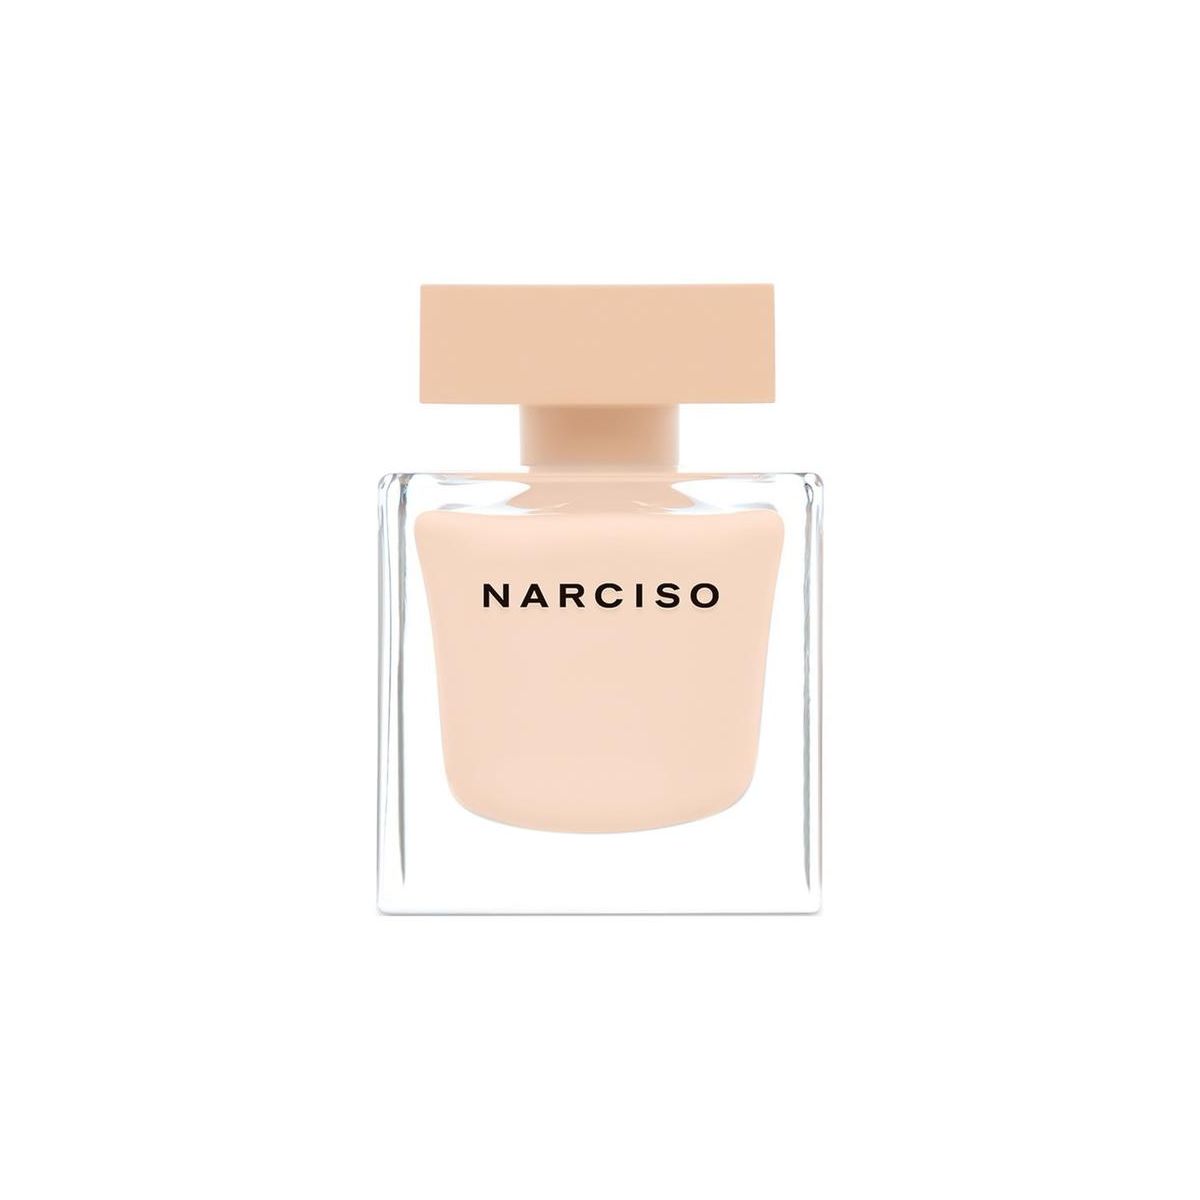 Parfums Narciso de la marque Narciso Rodriguez pour femme 90 ml